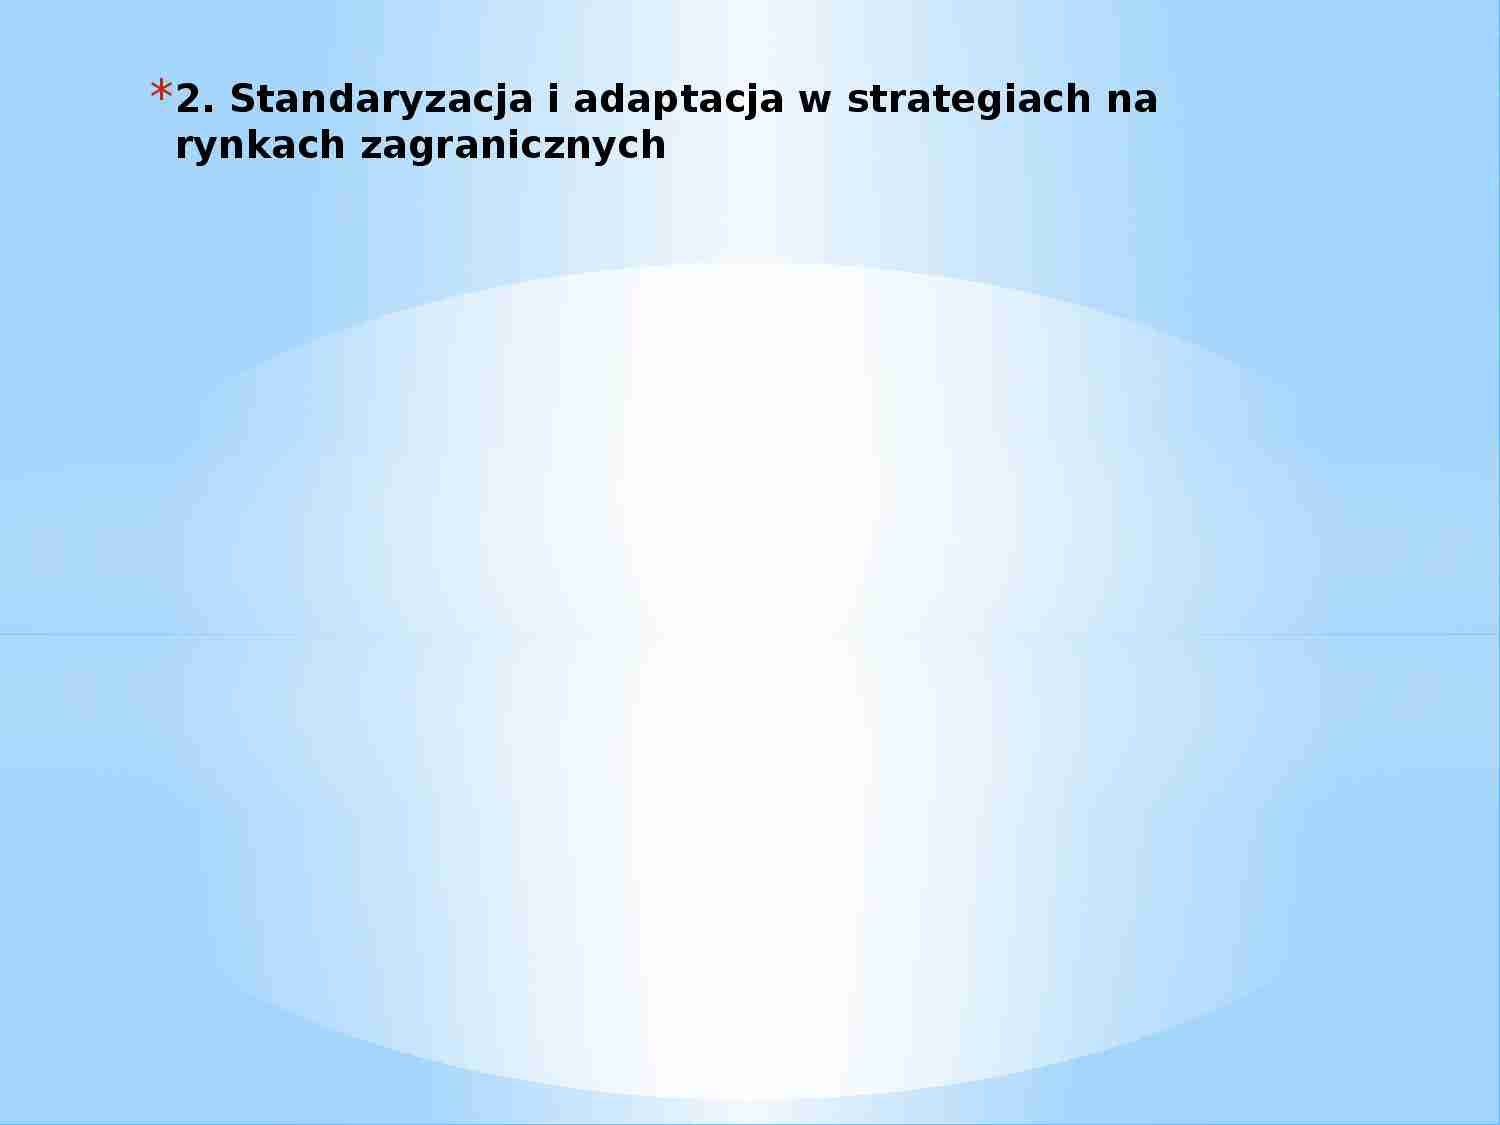 Standaryzacja i adaptacja w strategiach na rynkach zagranicznych - prezentacja - strona 1